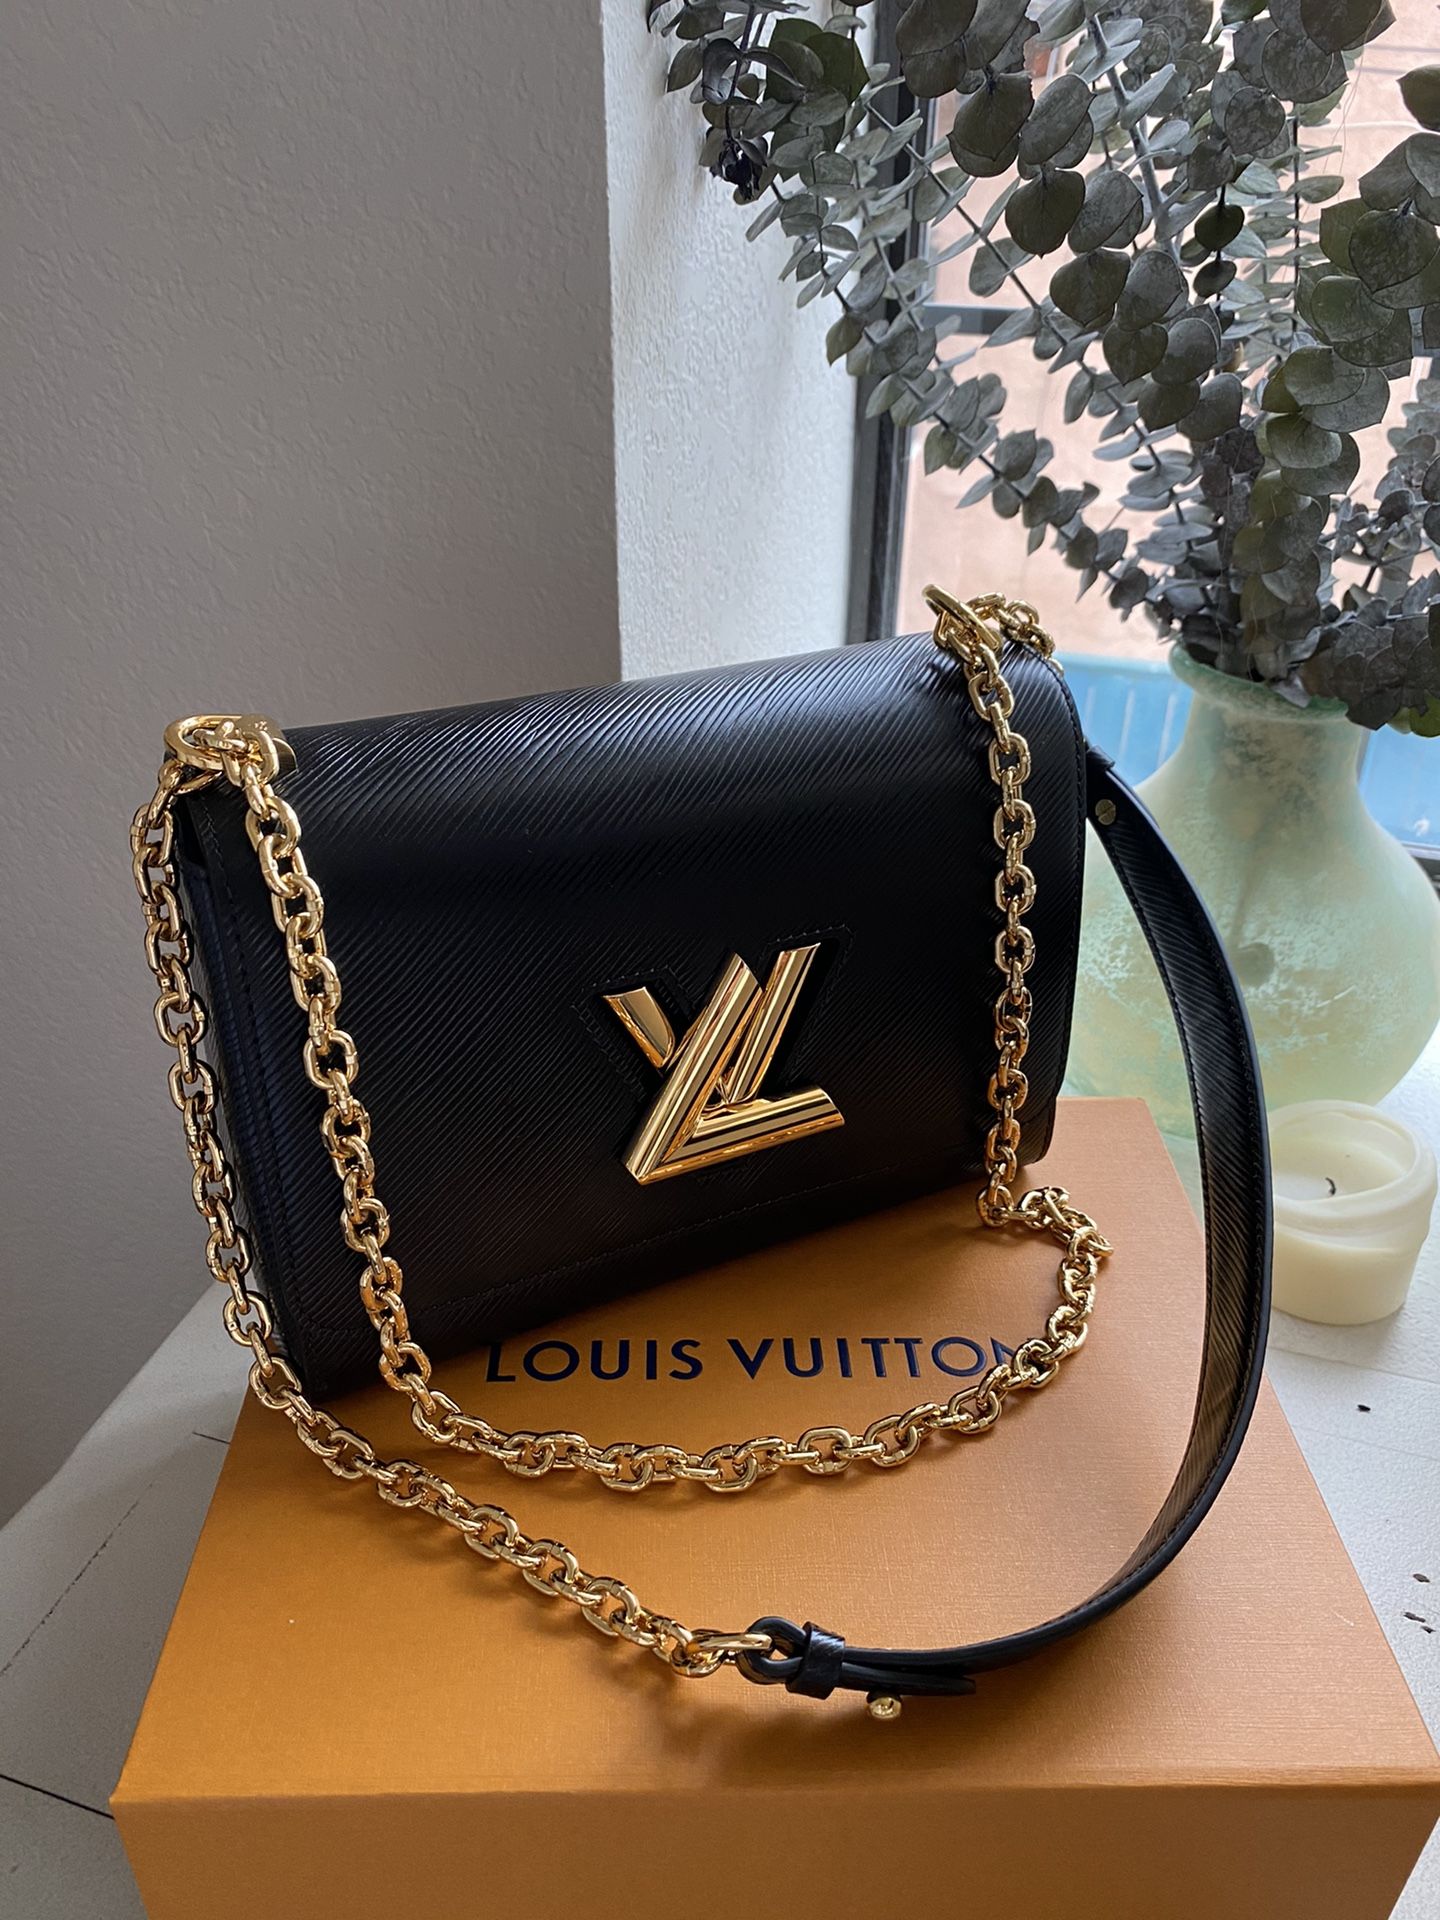 Classic Louis Vuitton mm black twist bag